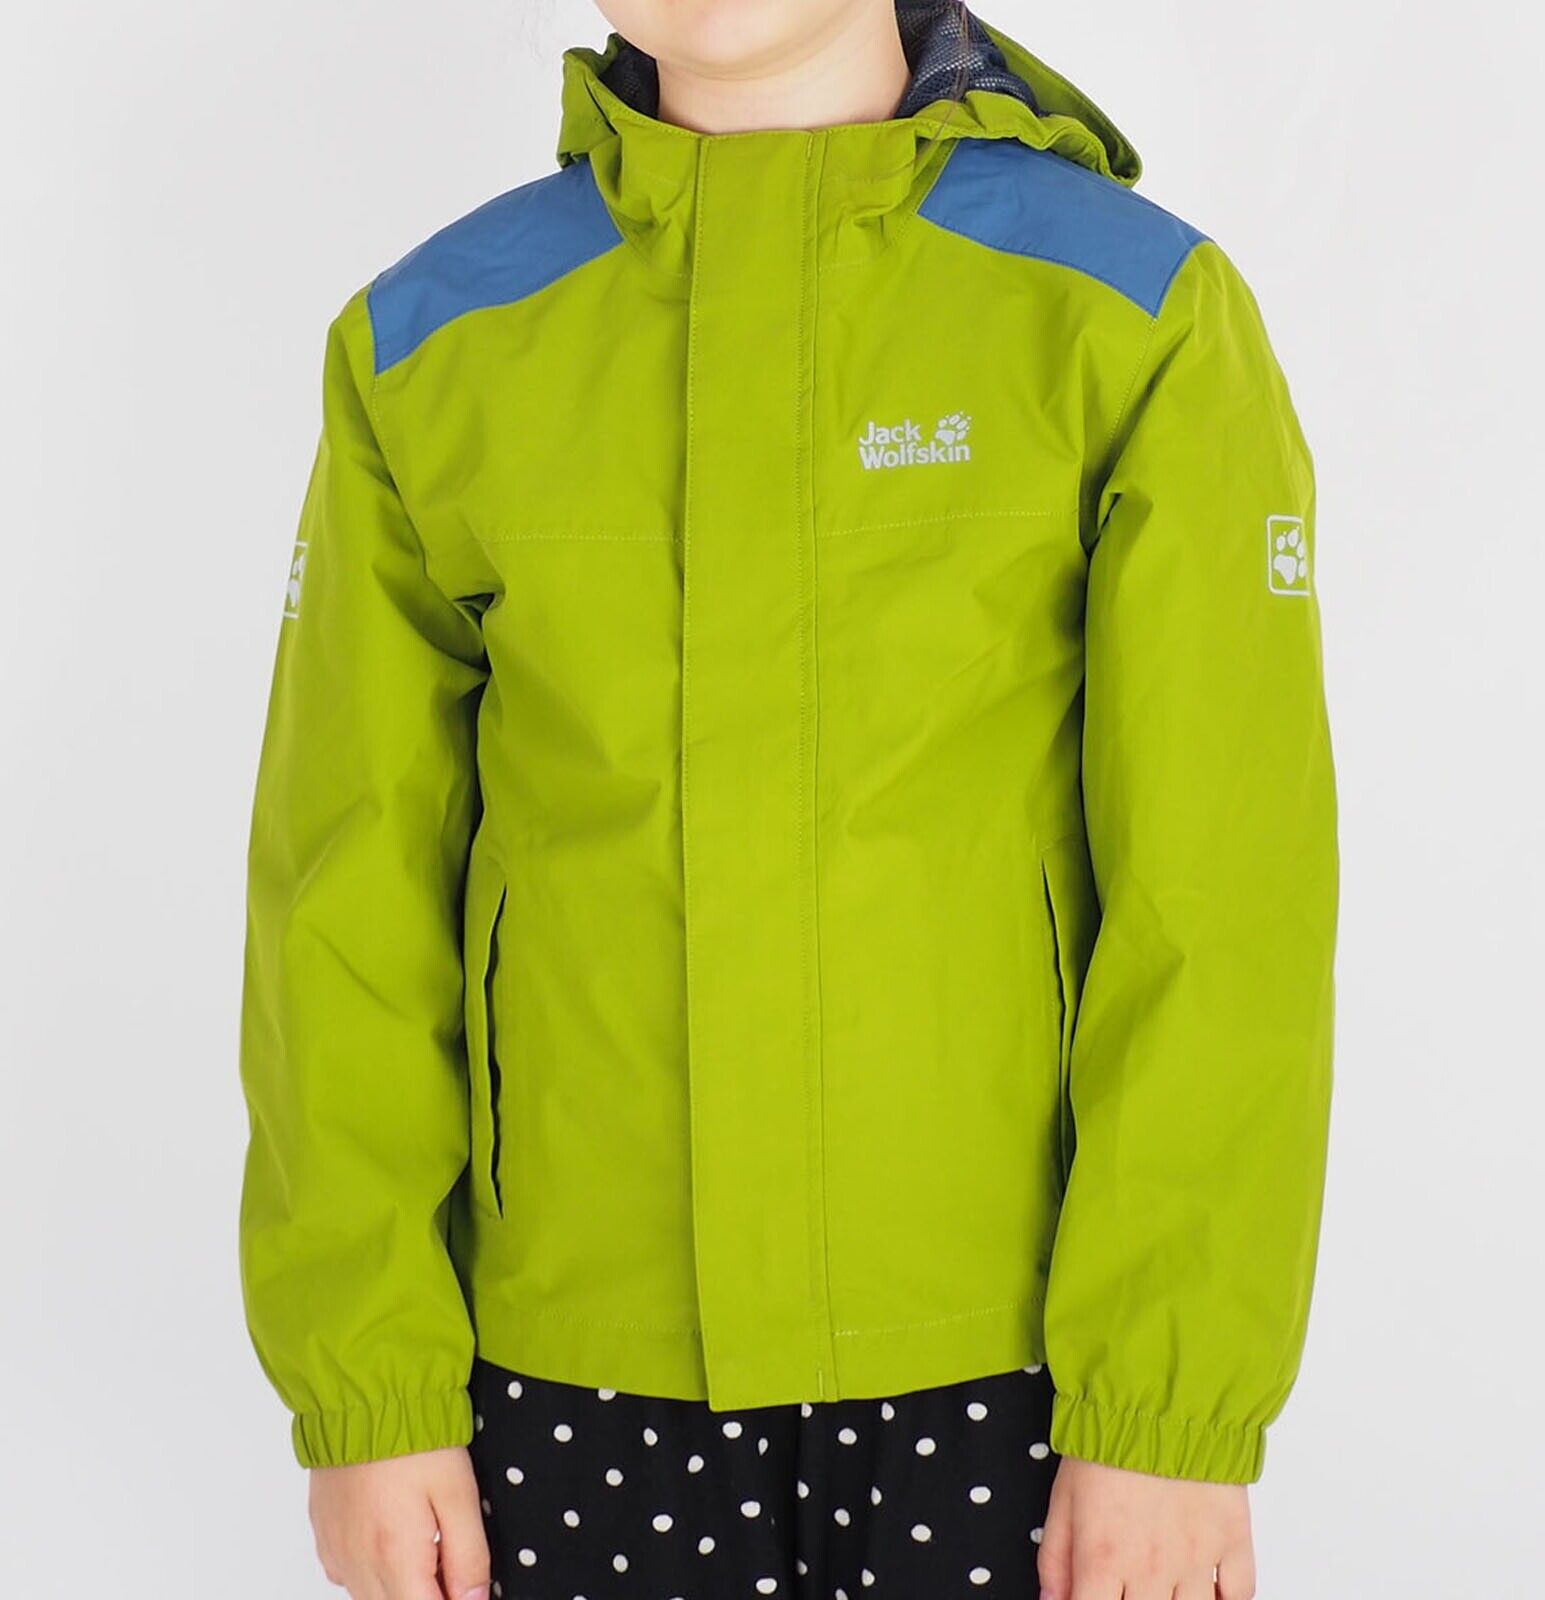 Kids Unisex Jack Wolfskin Oak Creek 1607111 Green Tea Waterproof Jacket - London Top Style